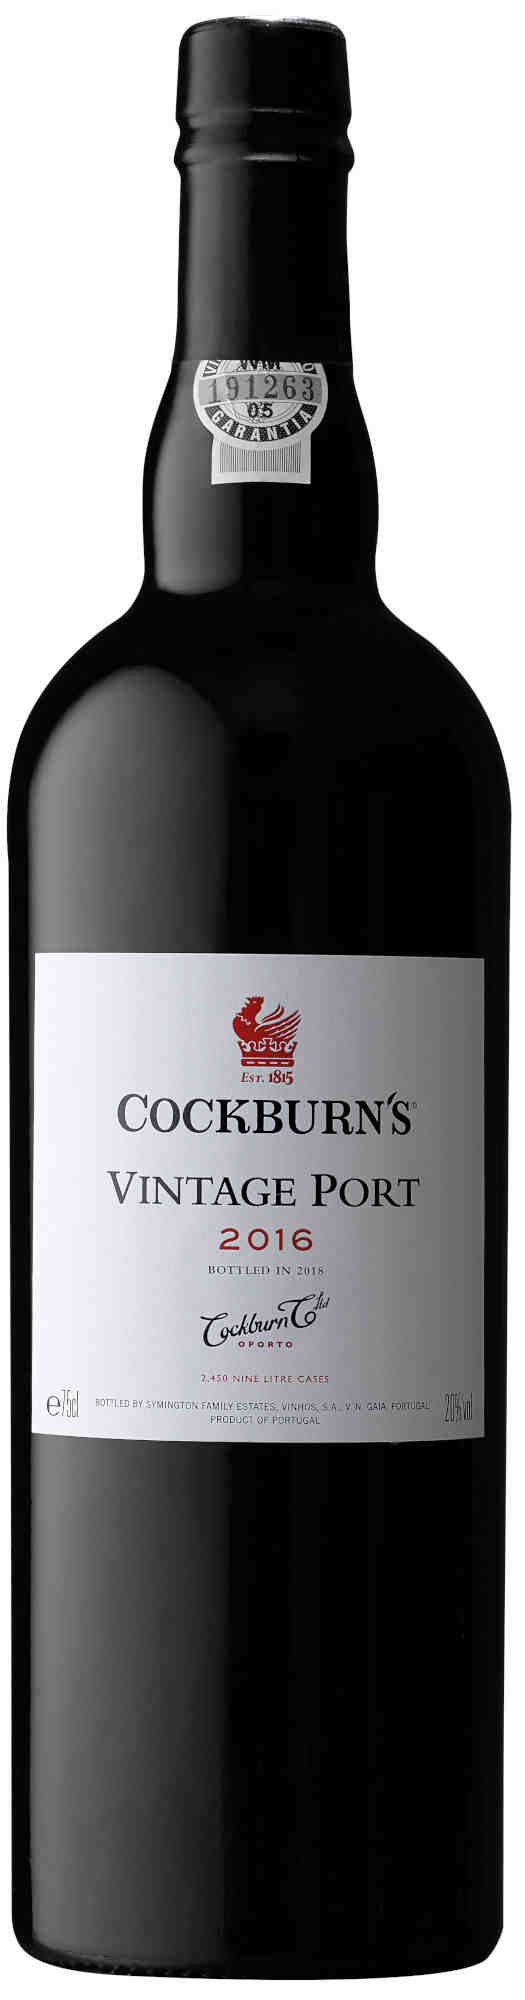 Cockburn-Vintage-Port-2016